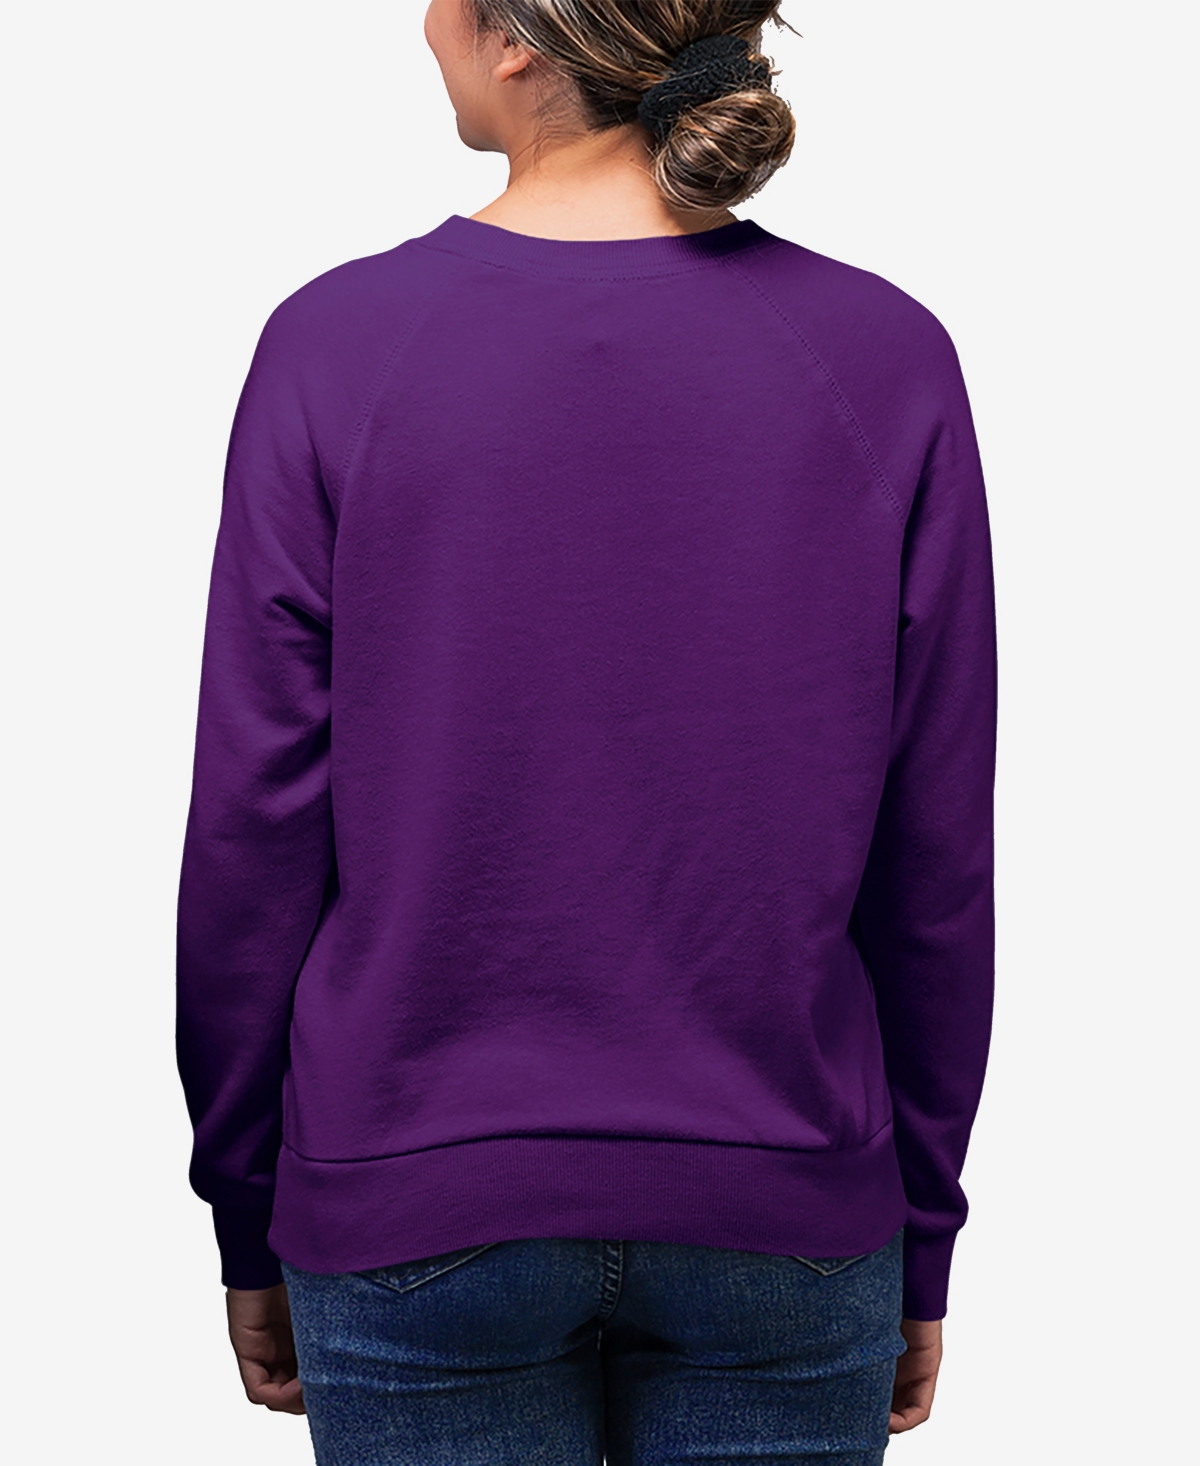 Shop La Pop Art Women's Word Art Girl Horse Crewneck Sweatshirt In Purple